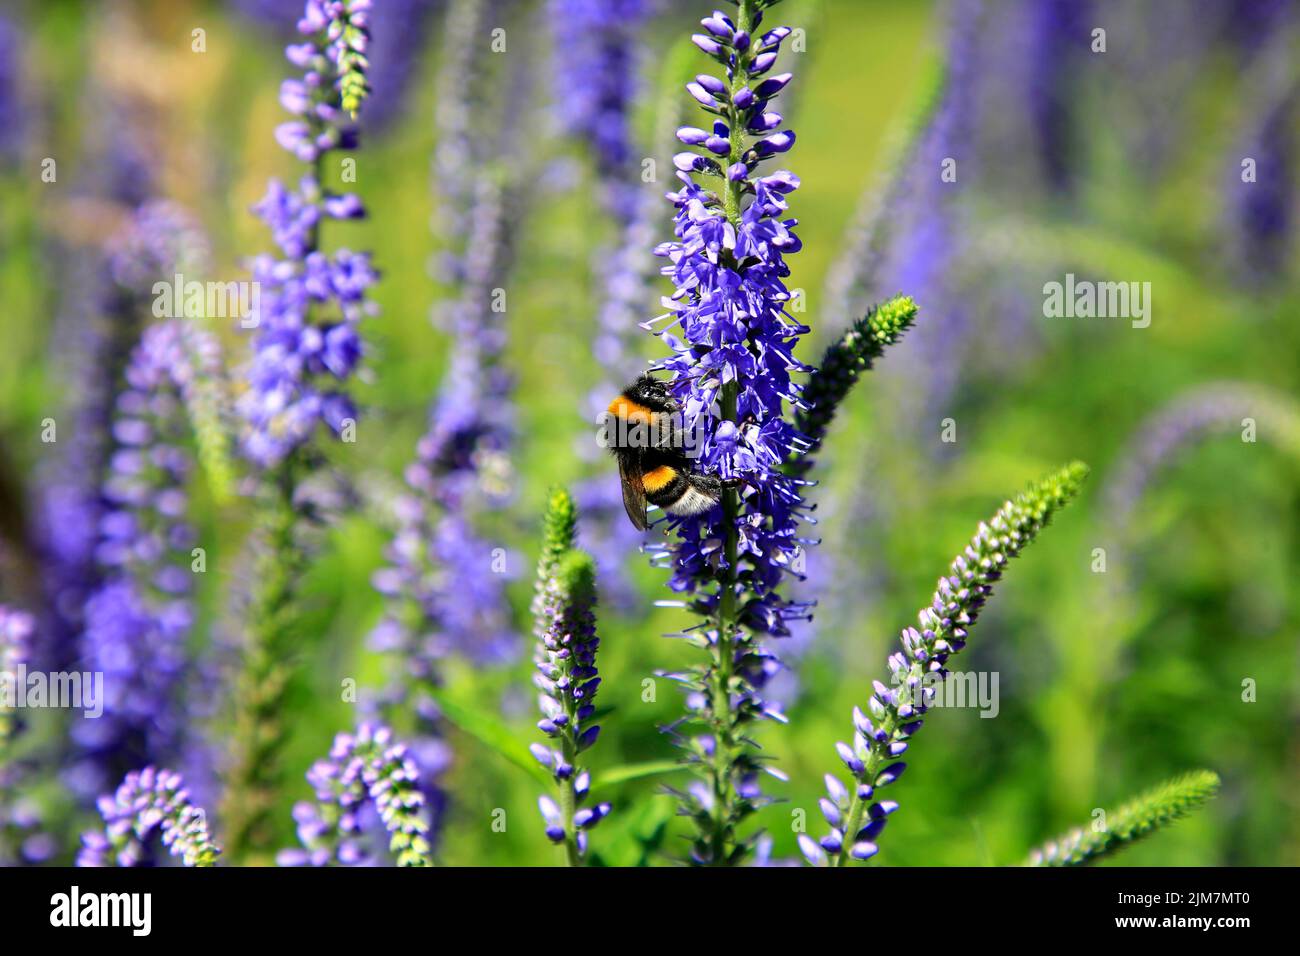 Bumblebee, insecte pollinisateur de Bombus spp., se nourrissant sur le nectar de Hyssop, Hyssopus spp. Par temps ensoleillé. Banque D'Images